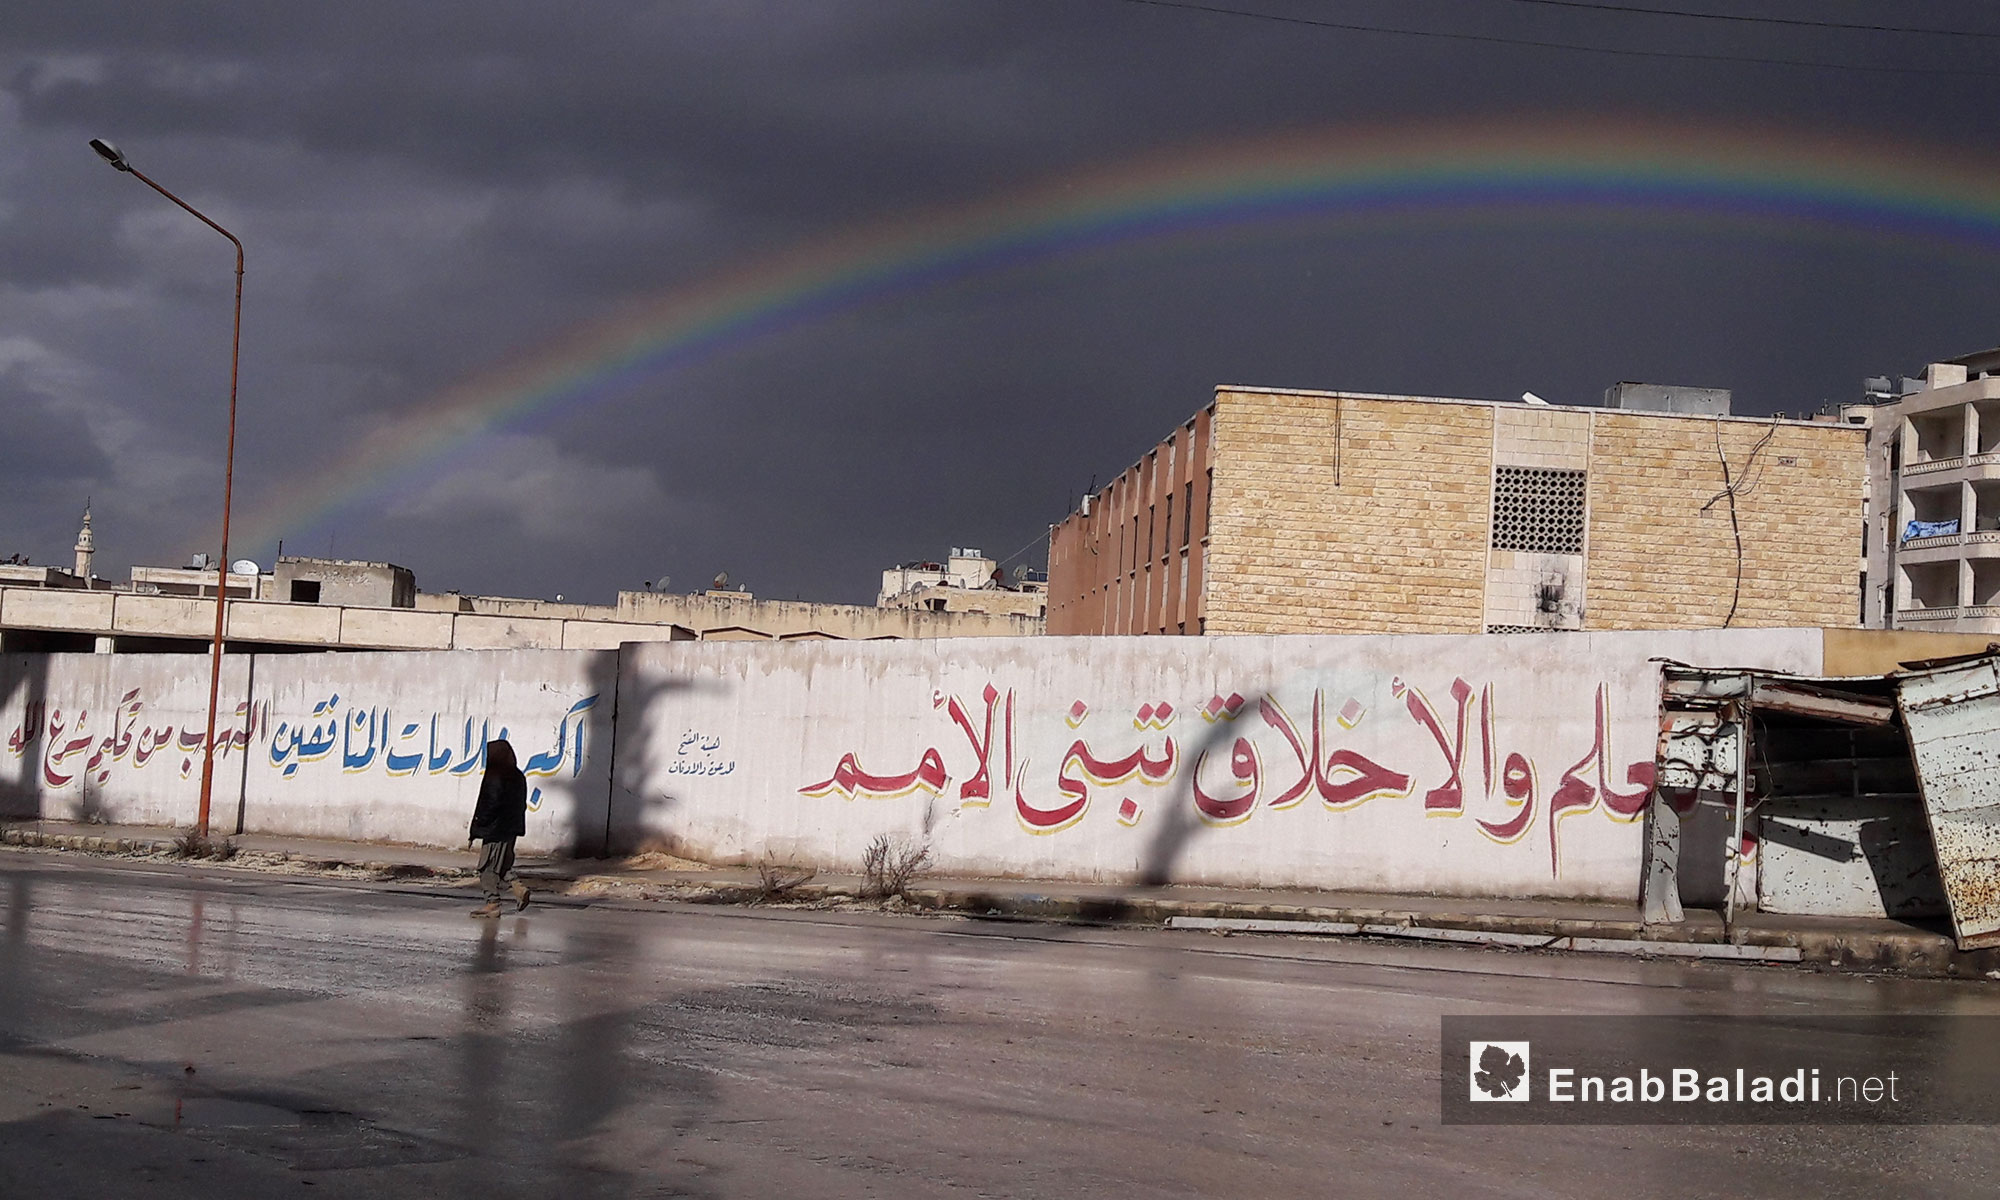 قوس قزح من مدينة إدلب - 8 كانون الثاني 2017 (عنب بلدي)